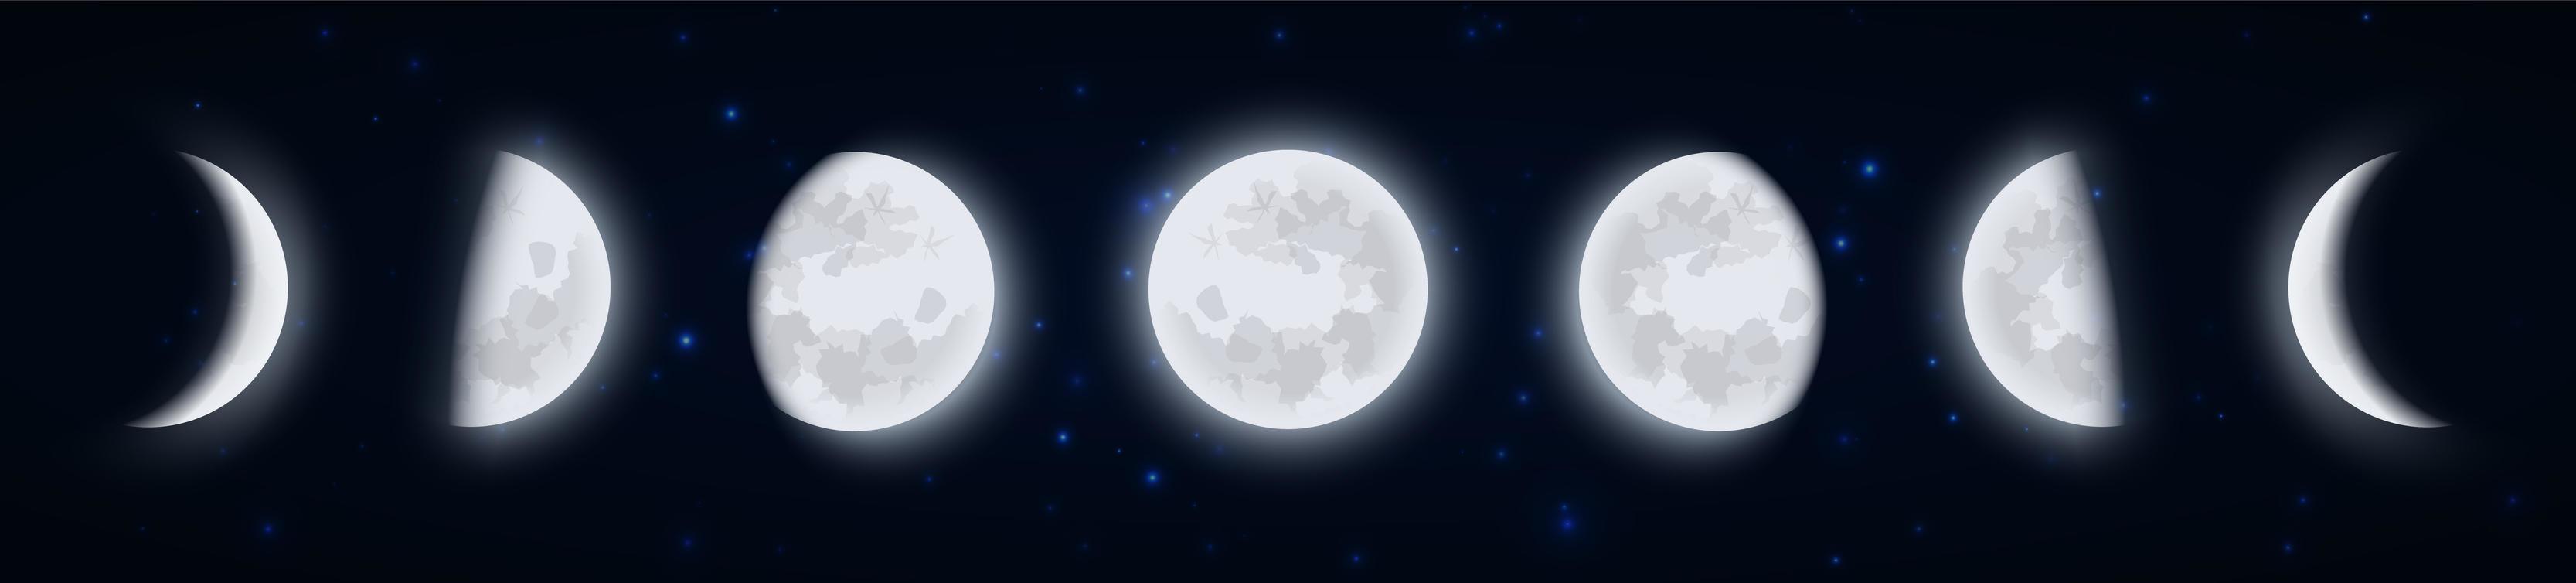 maanfasen icon set, maanstanden in de nachtelijke sterrenhemel, vorm van het direct door de zon verlichte gedeelte van de maan gezien vanaf de aarde. aarde satelliet iconen, vector illustraton.